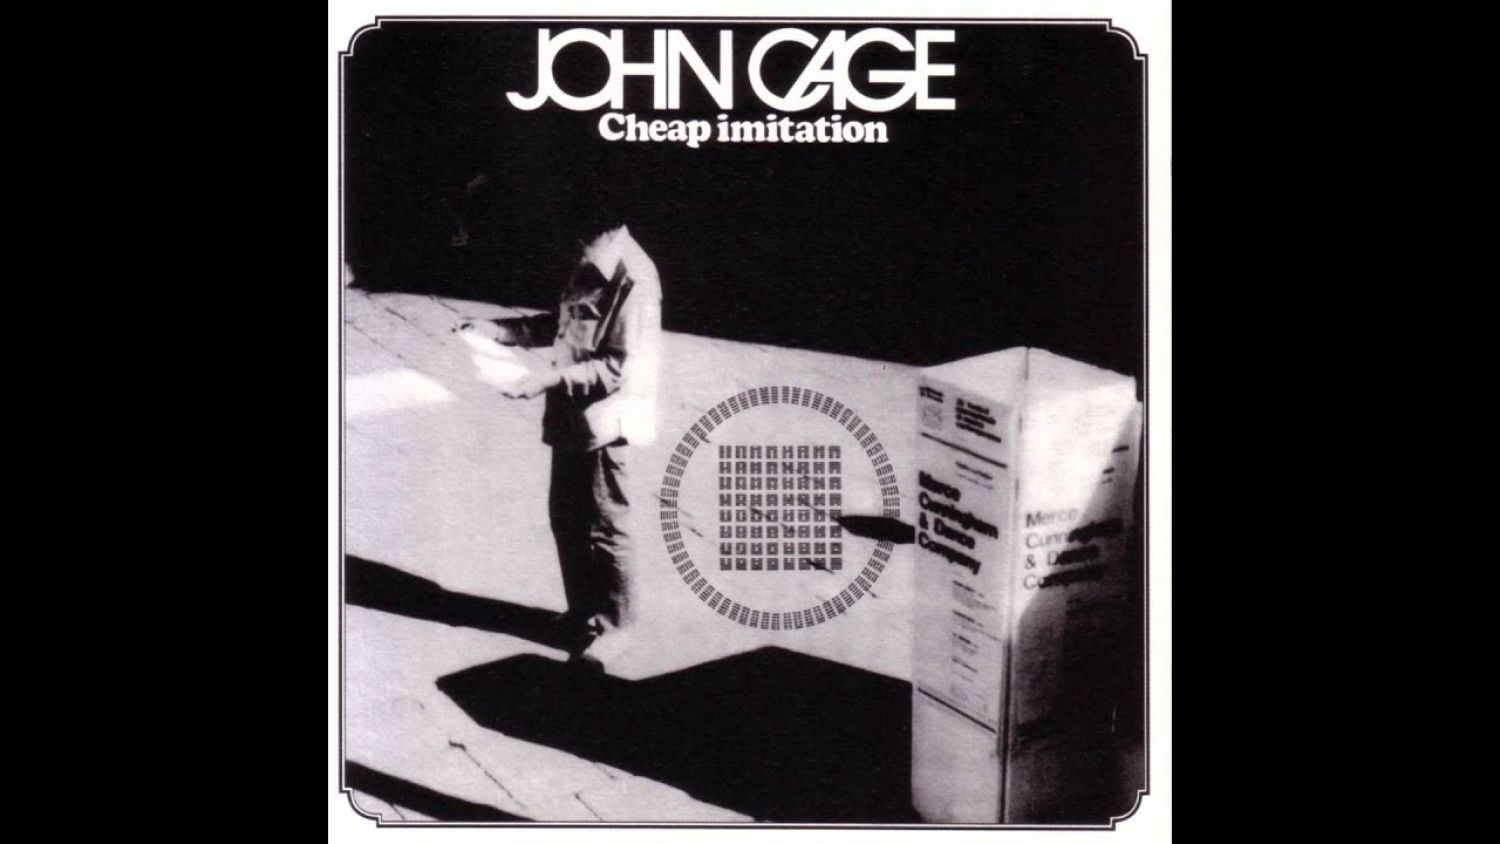 John Cage, Cheap Imitation, 1969